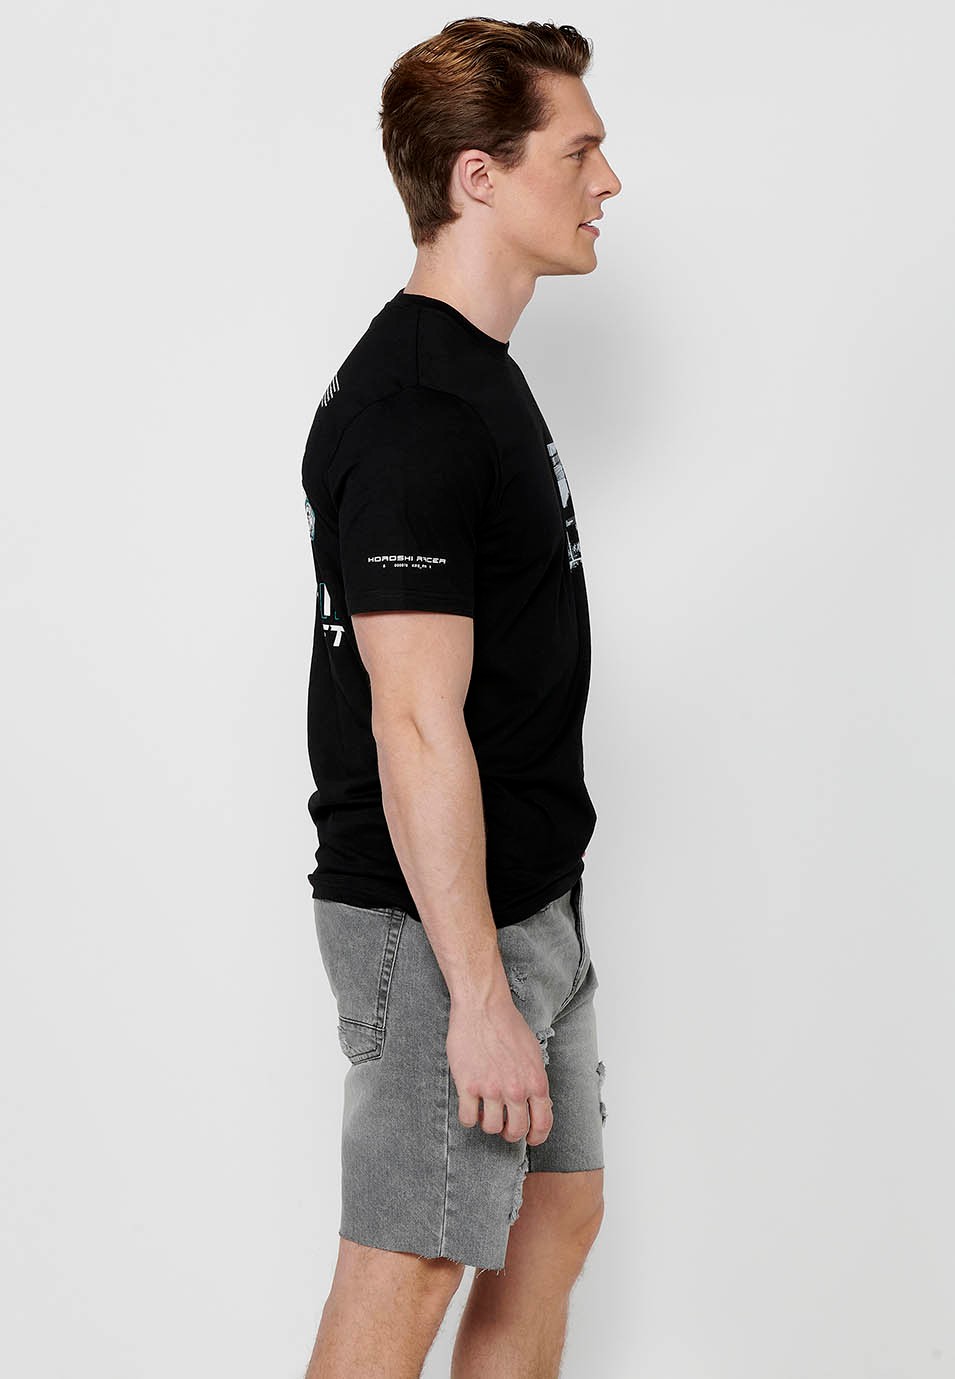 Camiseta de manga corta de algodón, estampado pecho multicolor, color negro para hombre